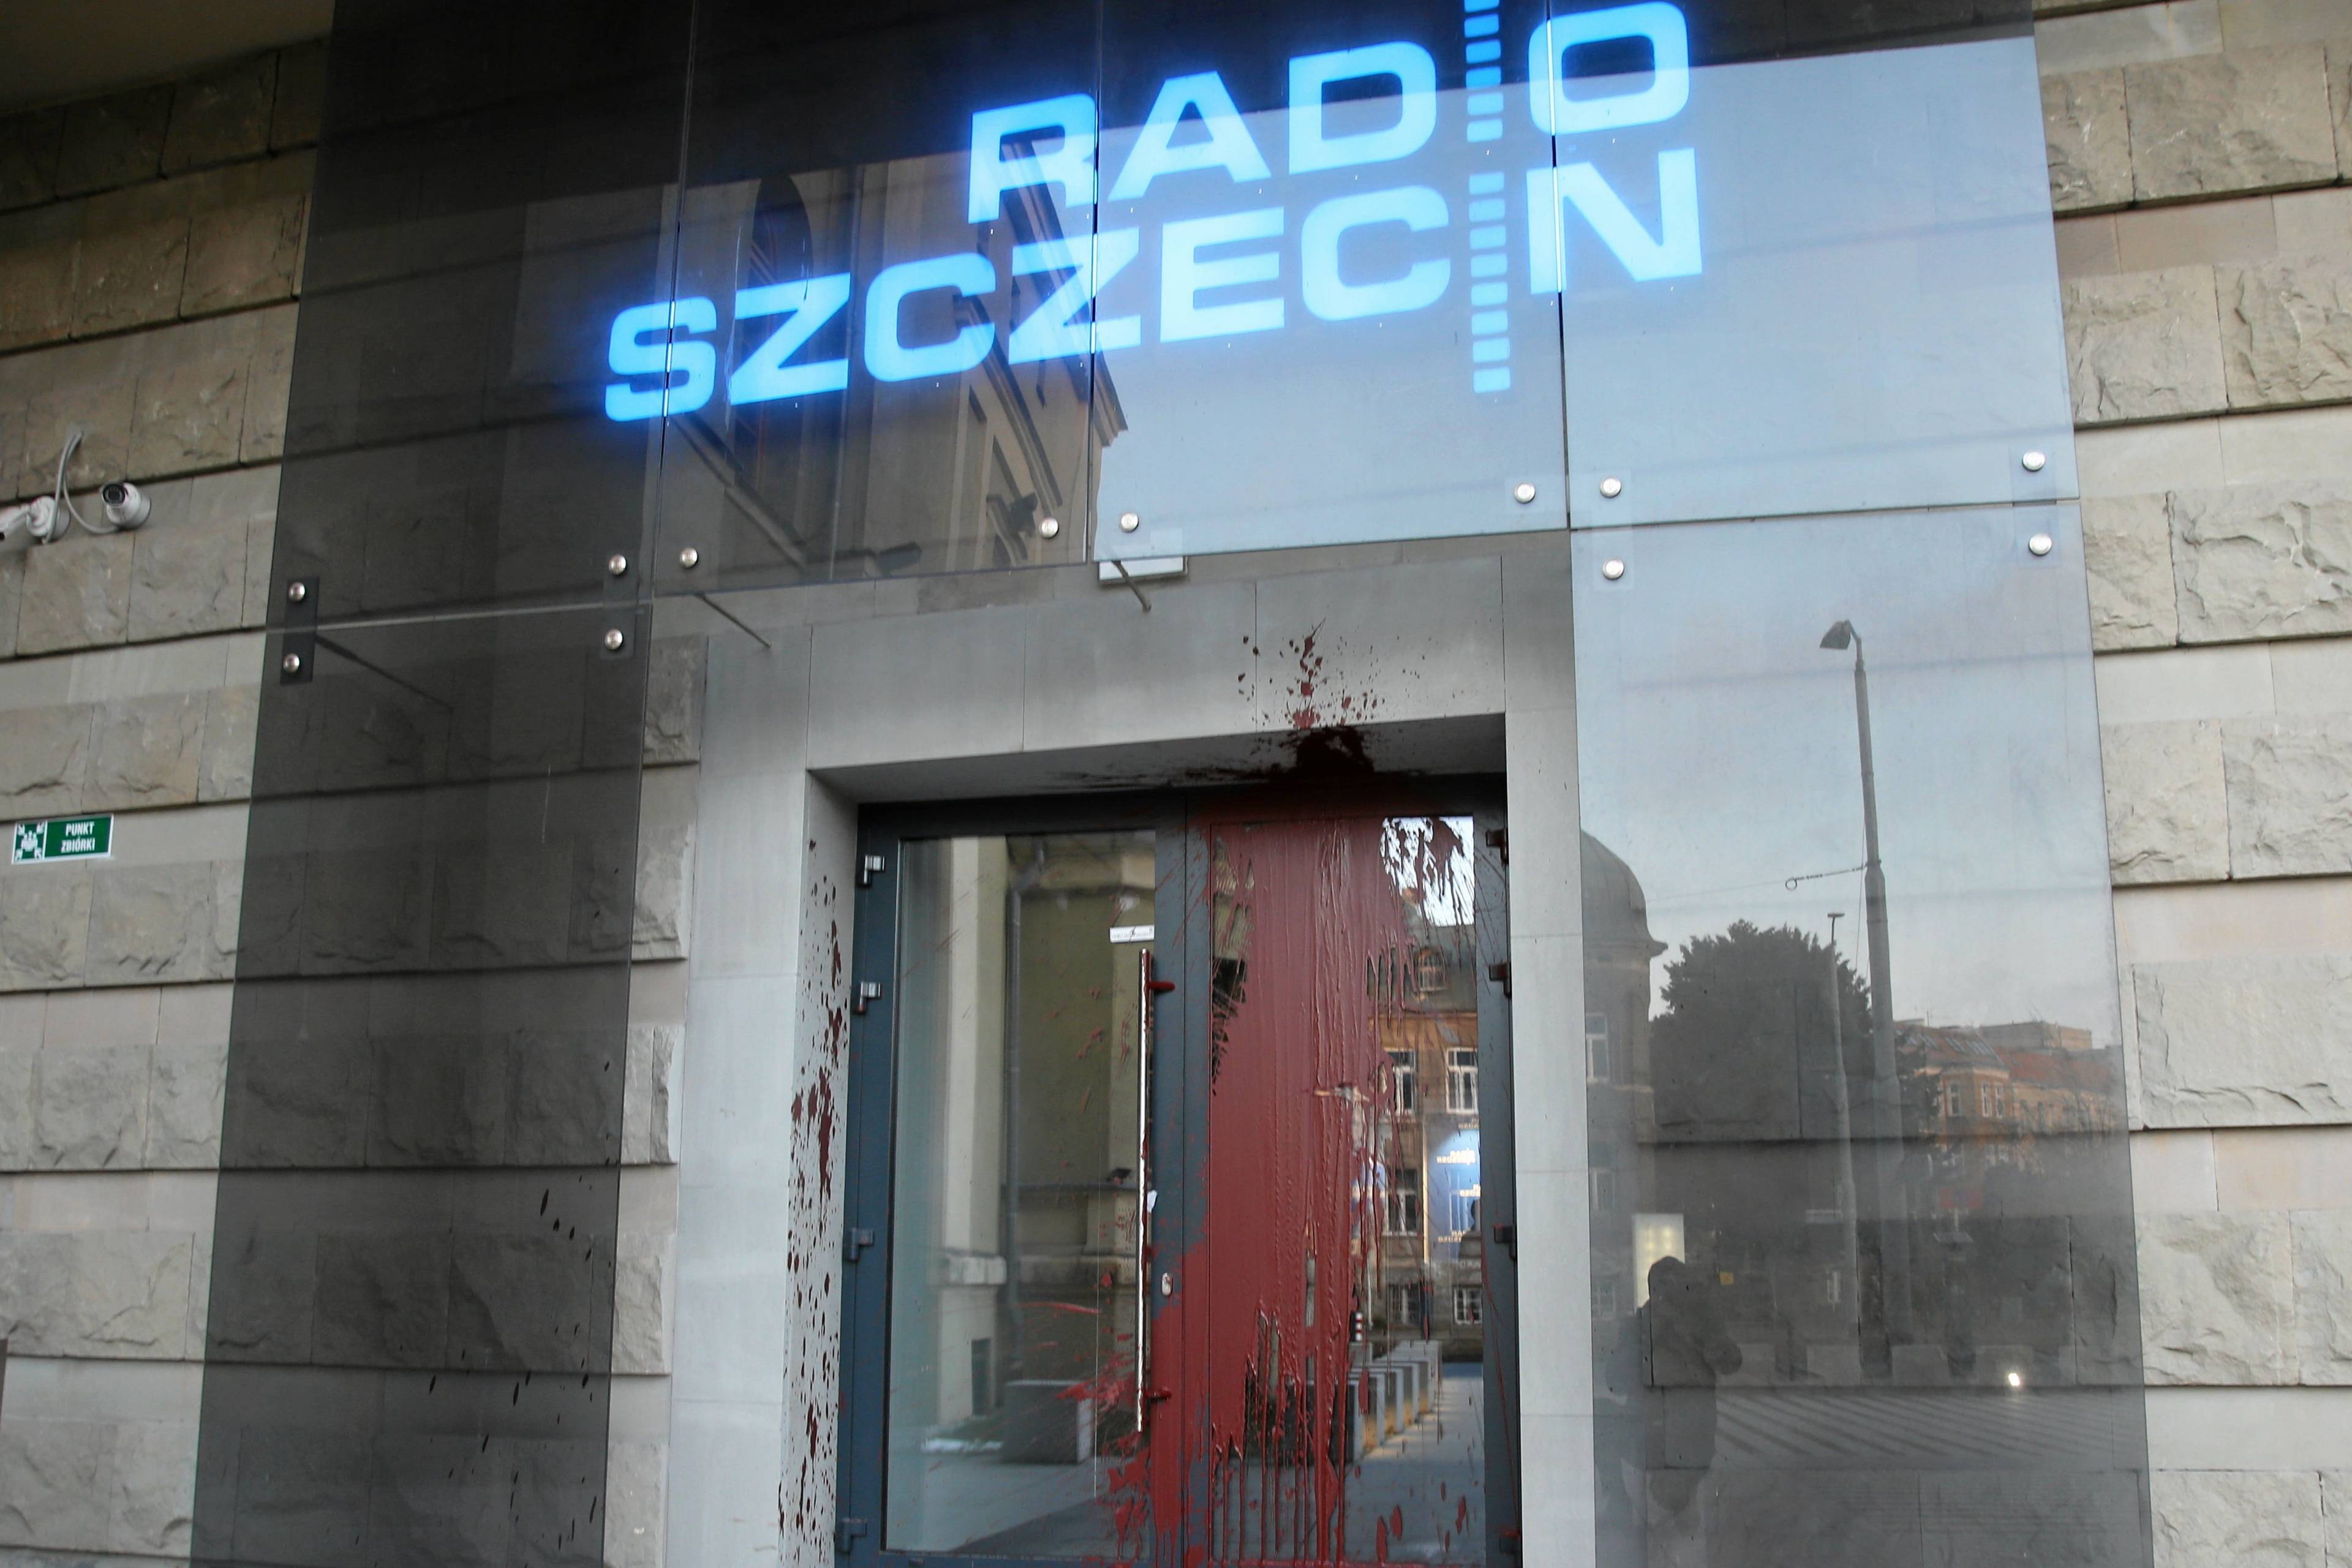 Drzwi z napisem Radio Szczecin oblane czerwoną farbą.